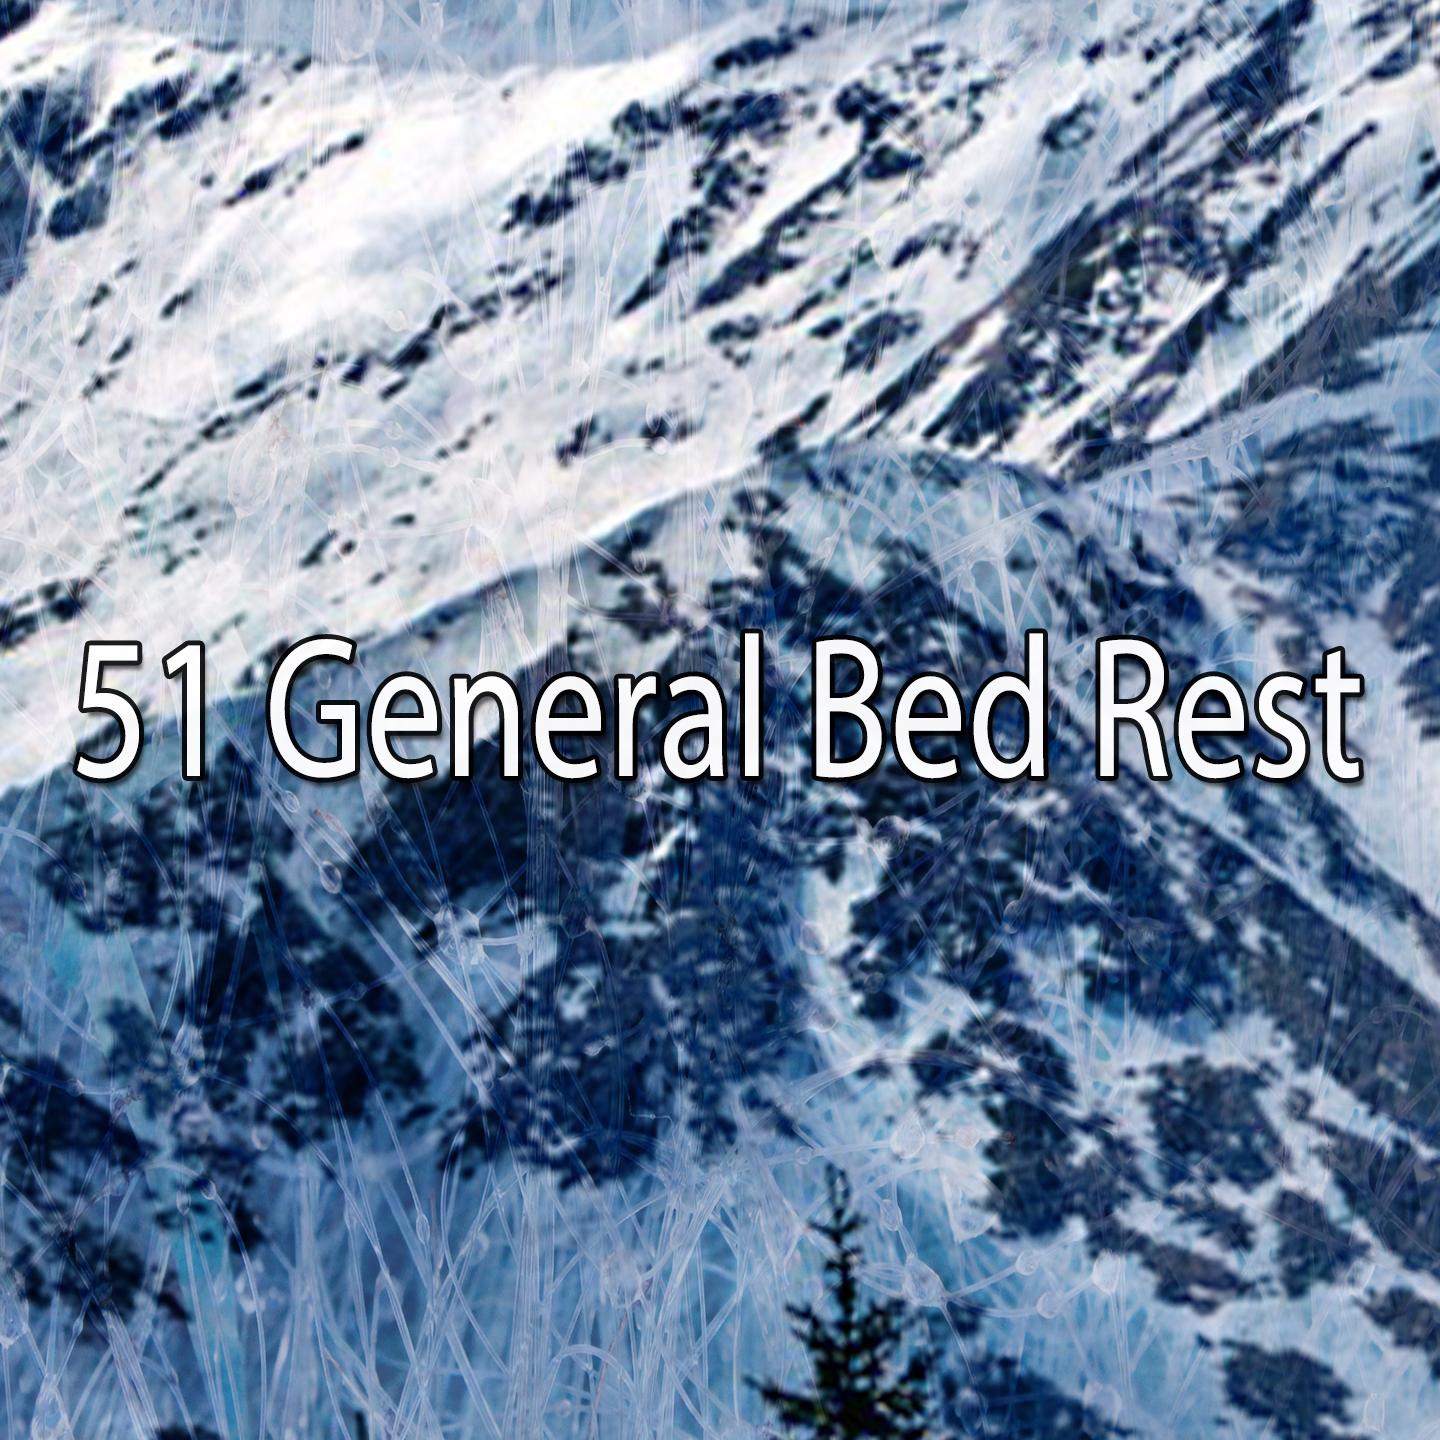 51 General Bed Rest